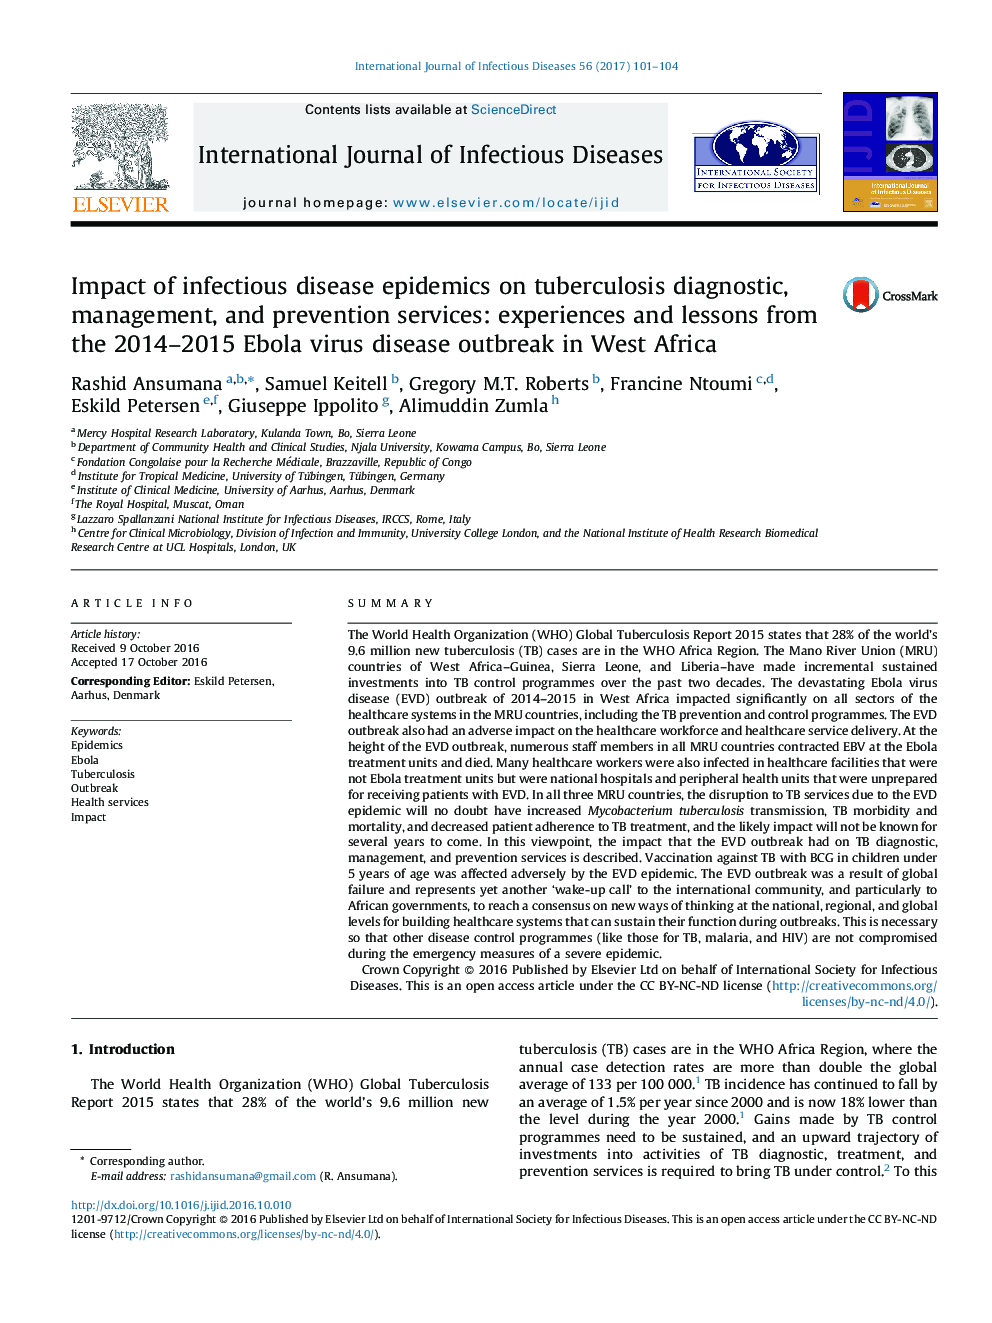 تأثیر بیماری همه گیر بیماری های عفونی در خدمات تشخیصی، مداخله و پیشگیری از بیماری سل: تجربیات و درس های بیماری ویروس ابولا 2014-2015 در غرب آفریقا 